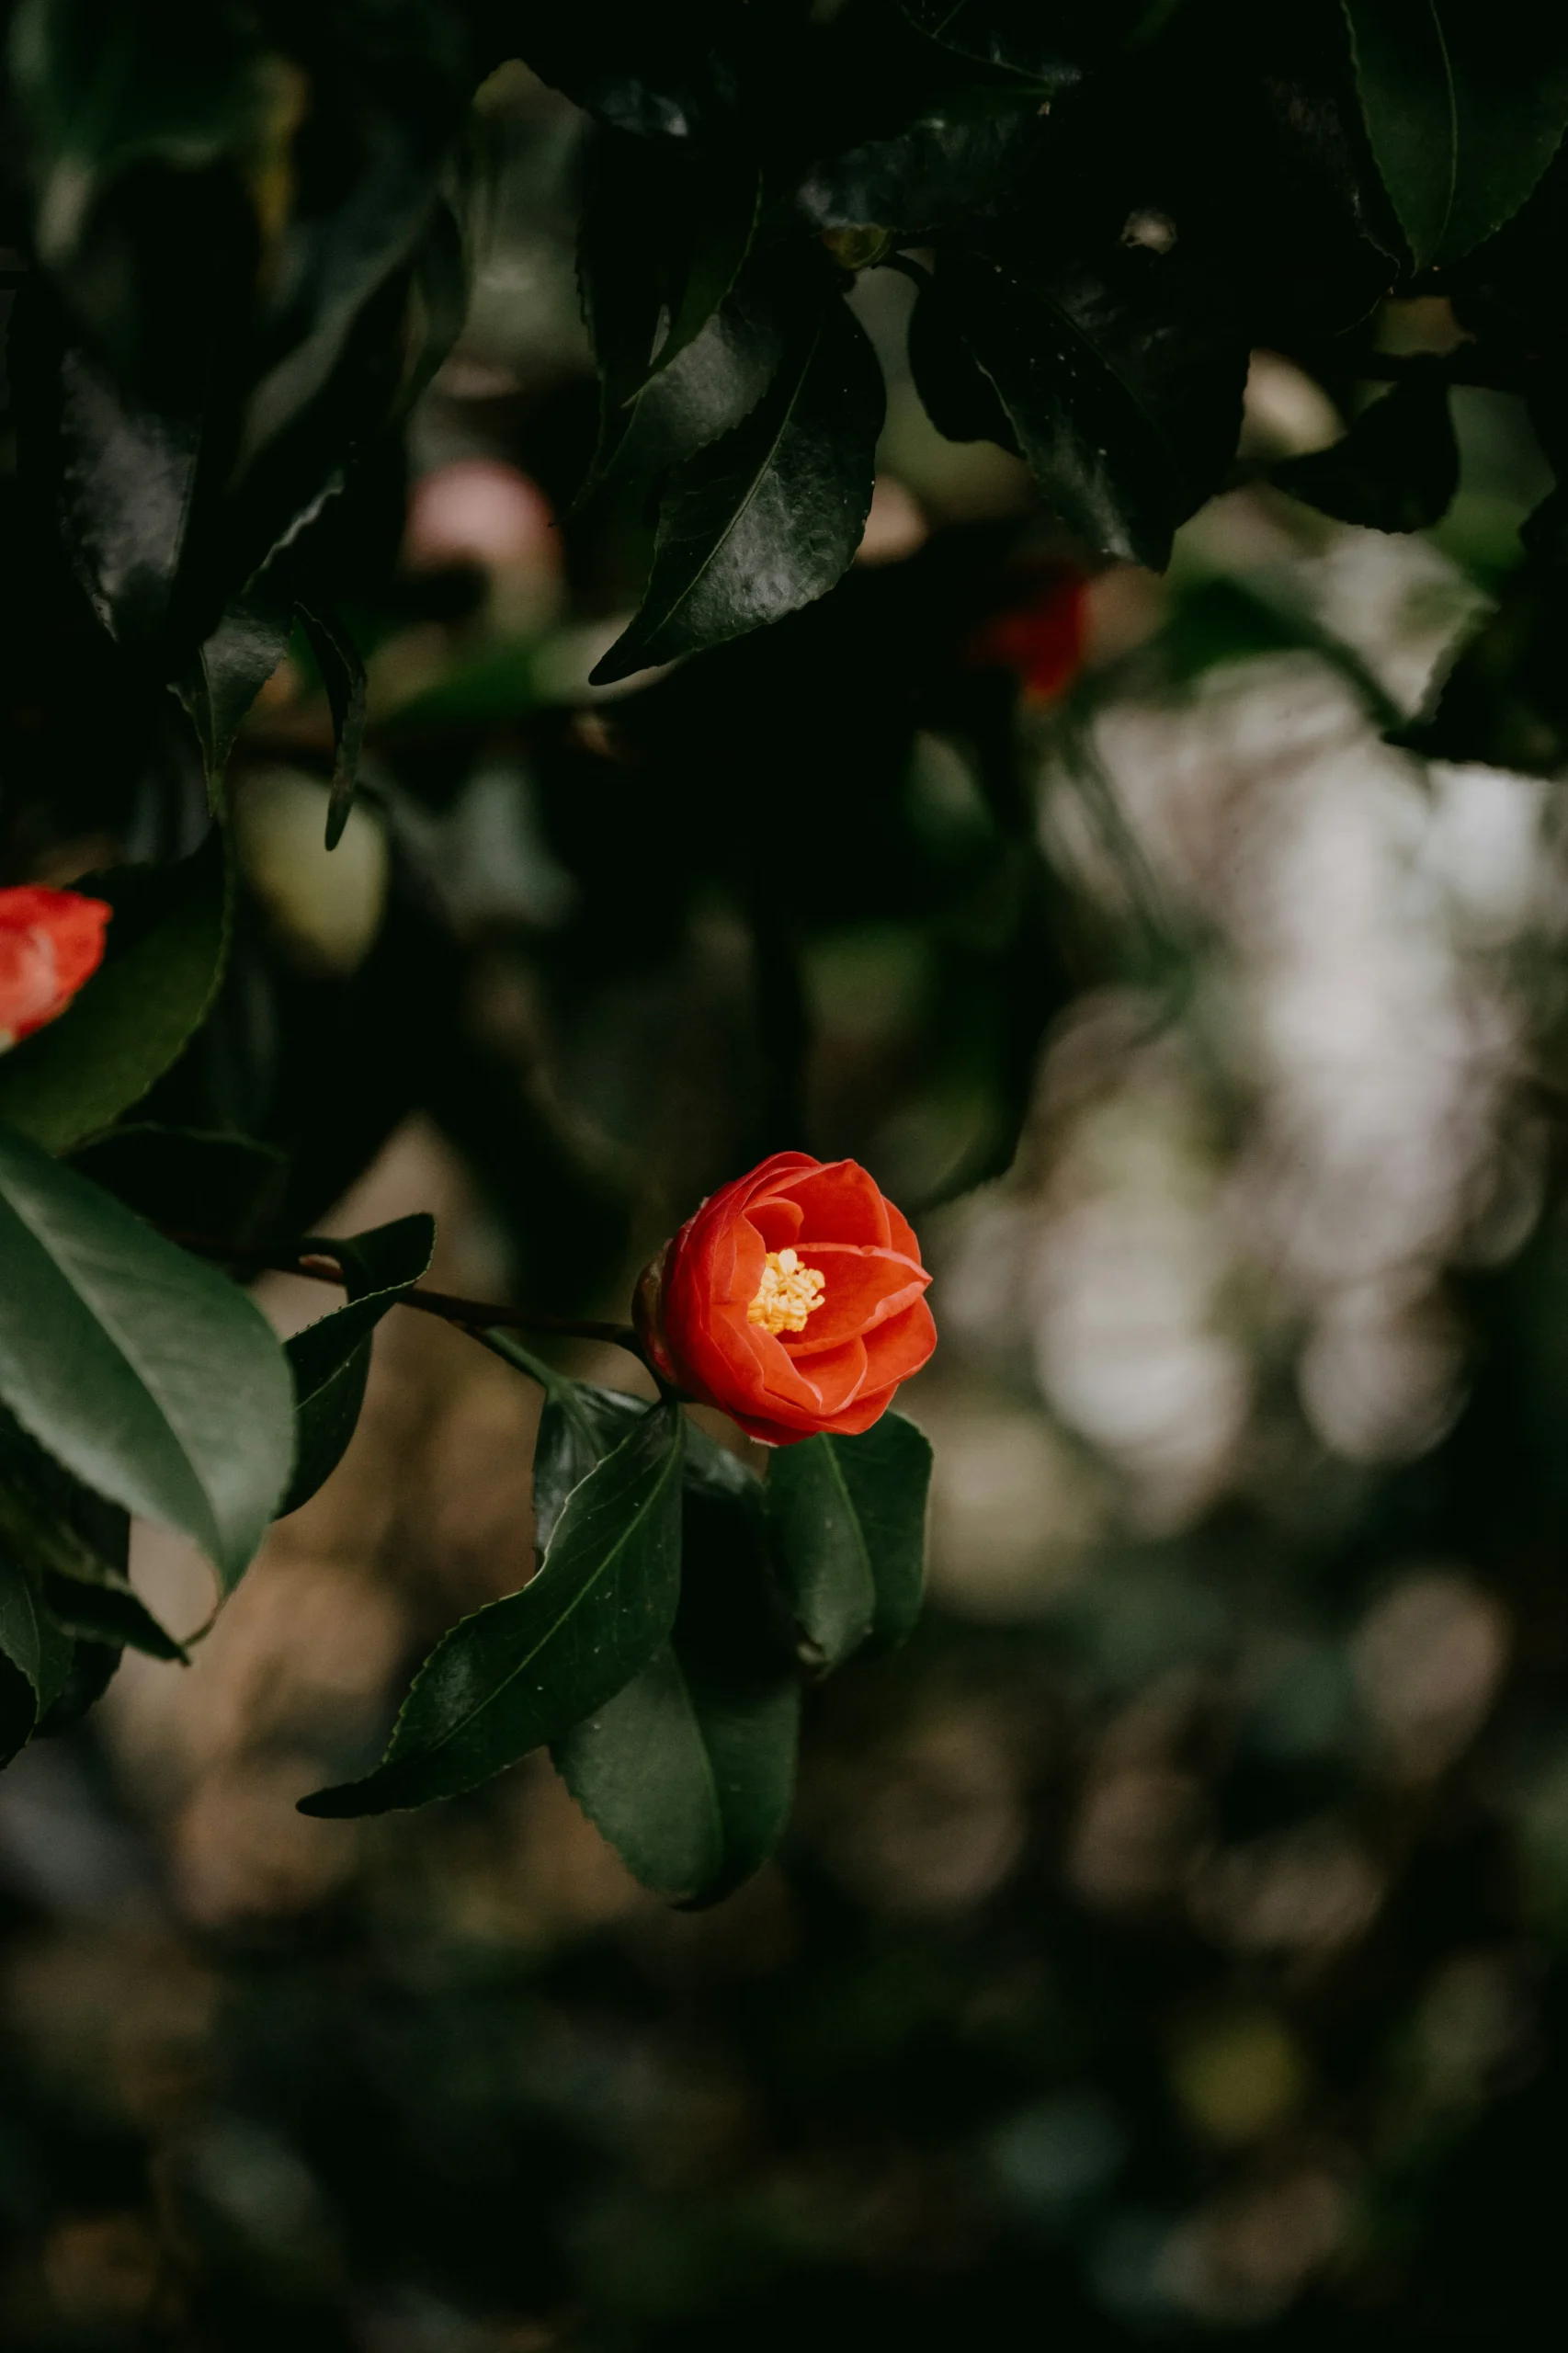 桜の淡い紅色と並んで、椿（つばき、Camellia）の茜色が映えます。